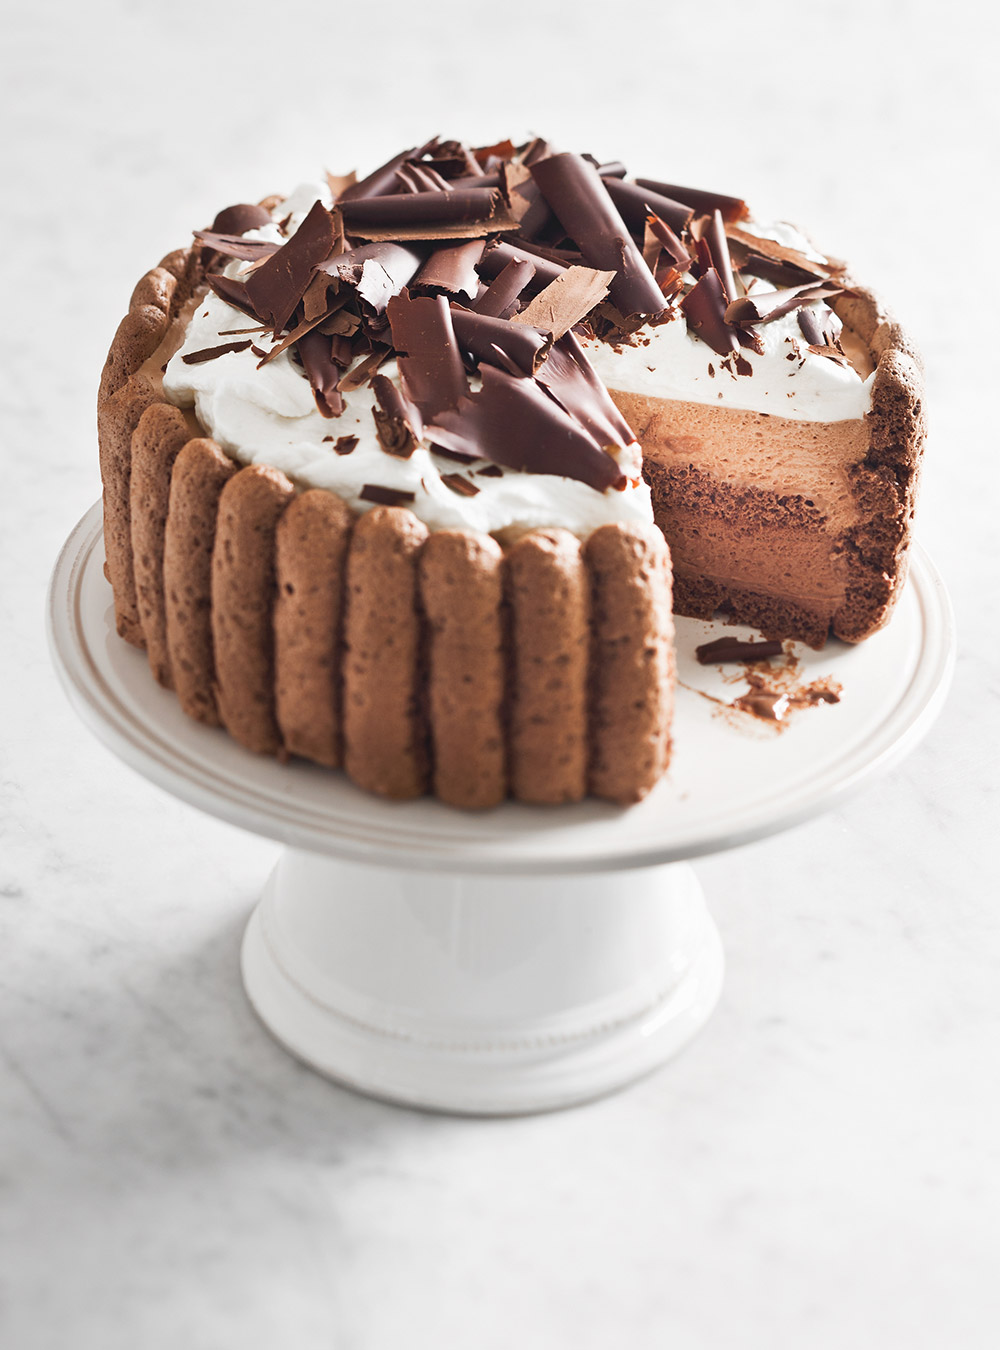 Chocolate Charlotte Cake | No-Bake Chocolate Mousse Cake - YouTube